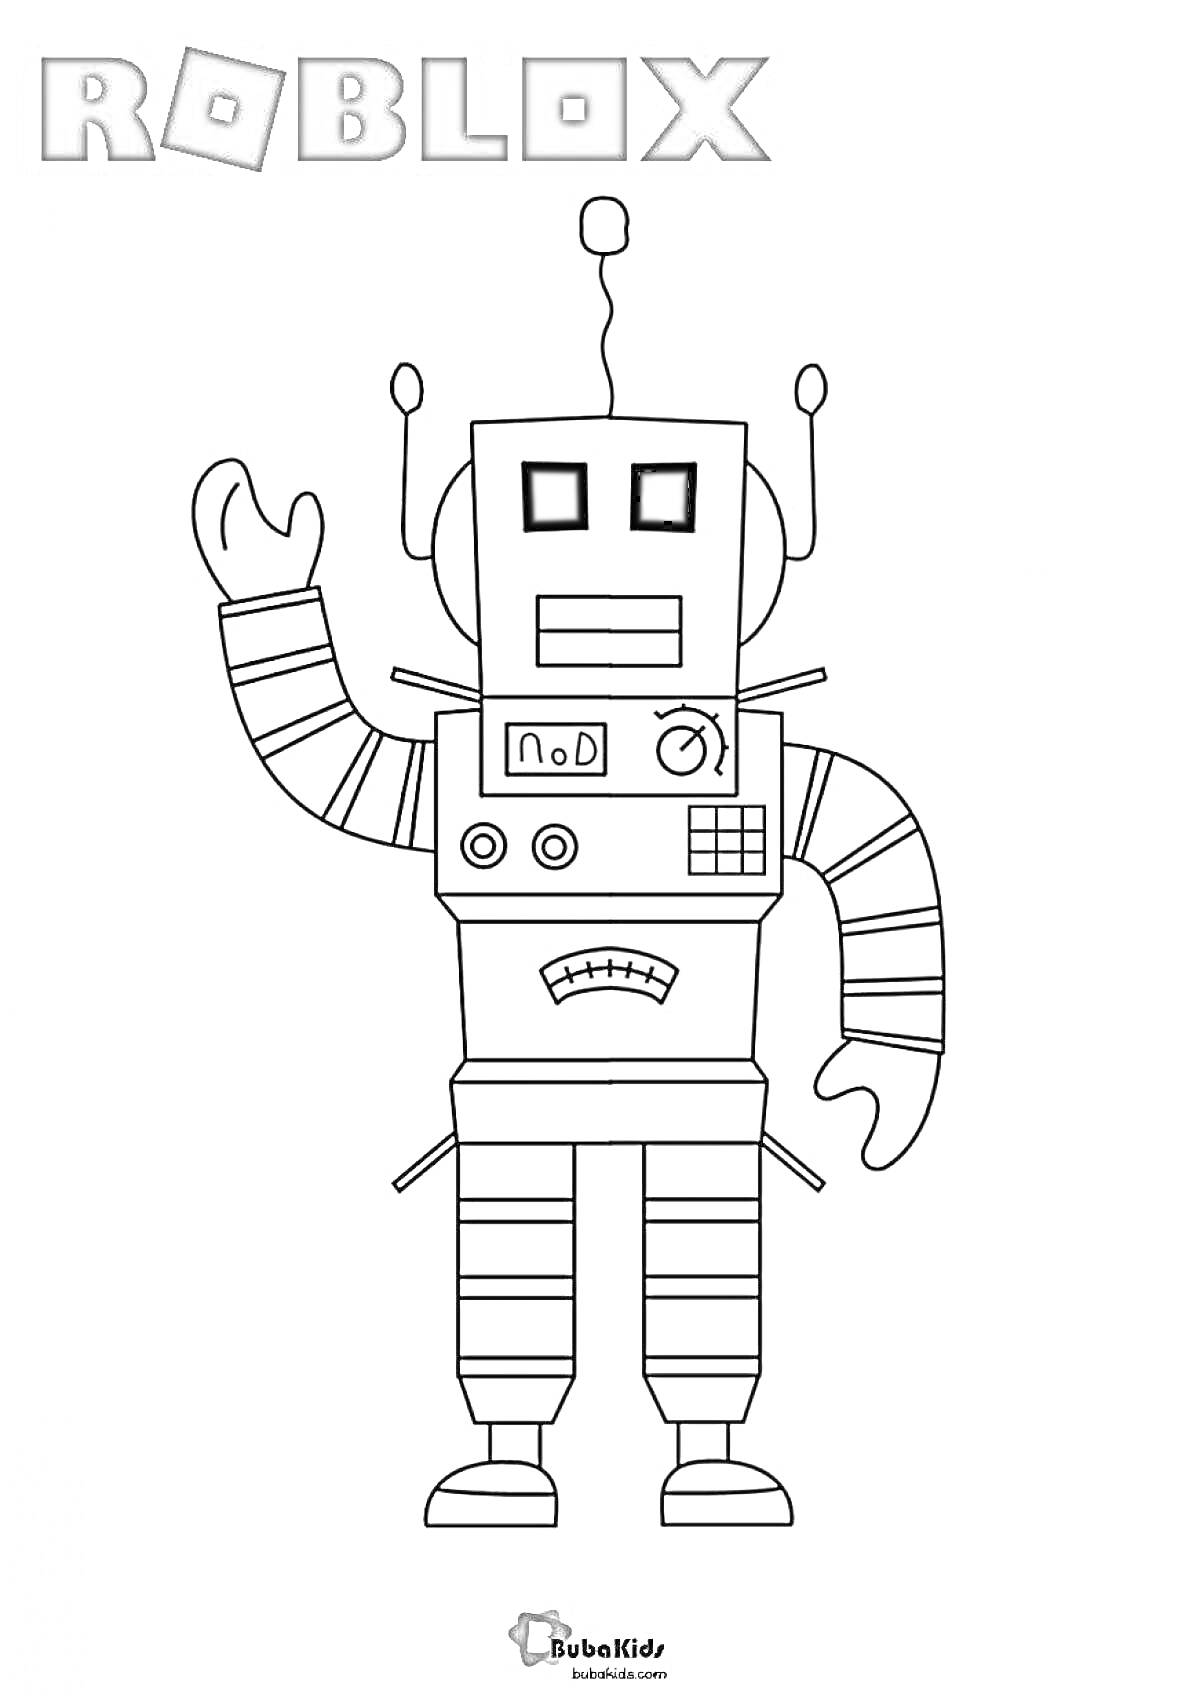 Раскраска Робот из Roblox, поднимающий руку